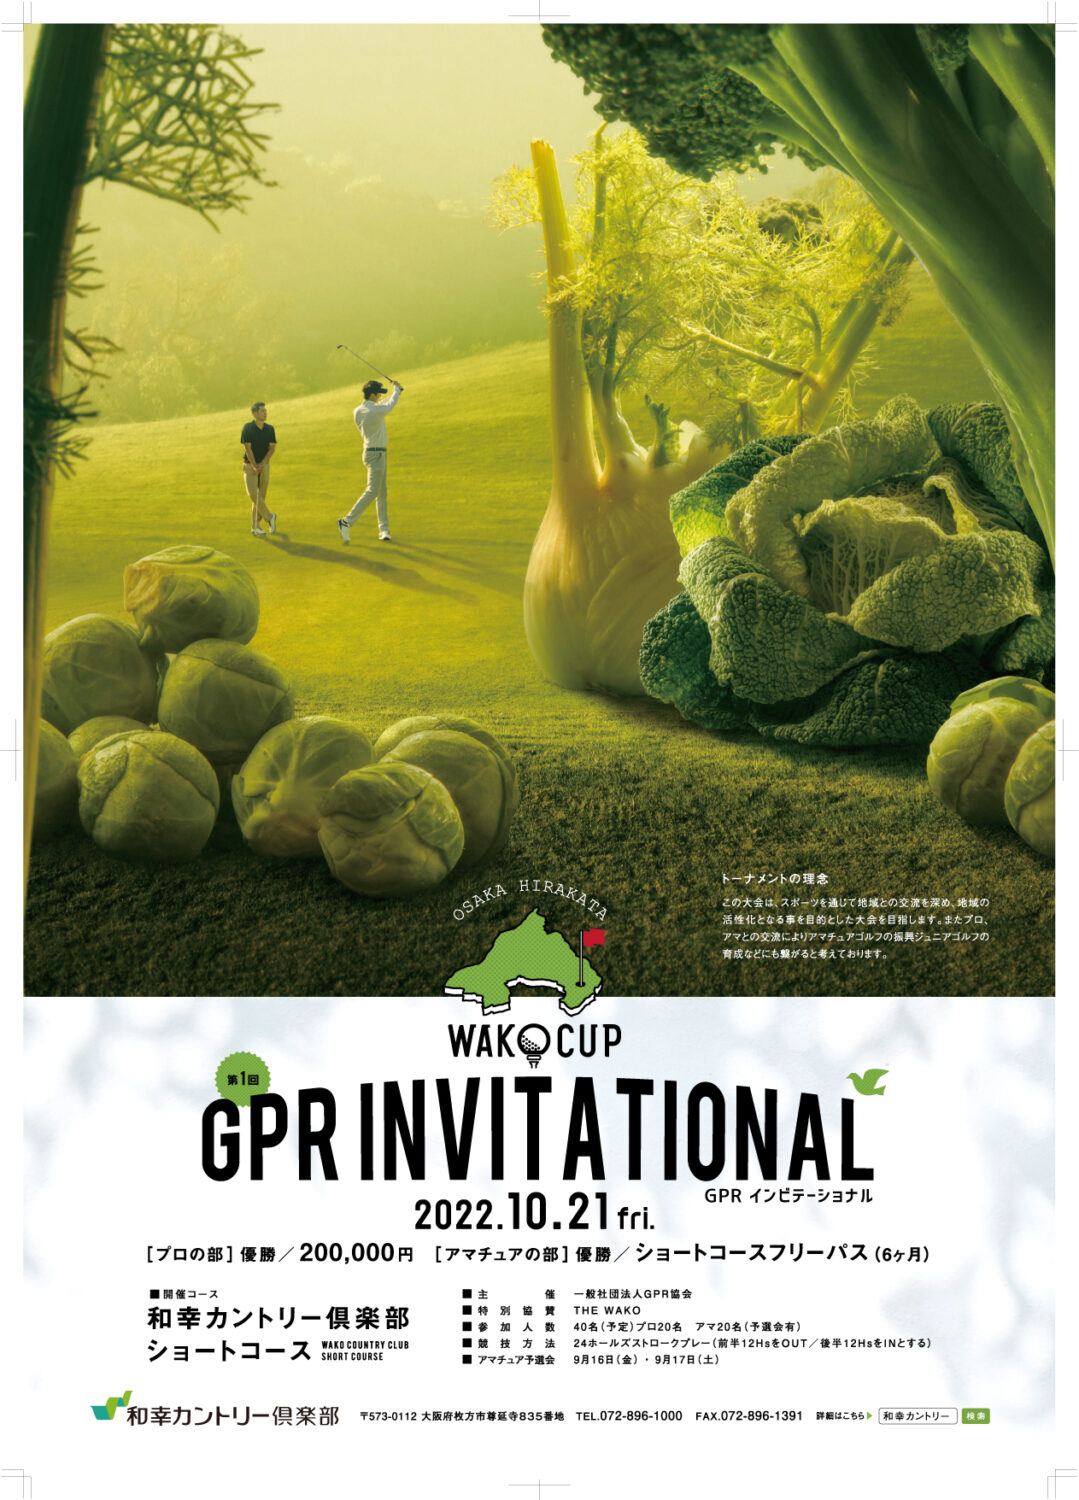 一般社団法人　GPR協会主催で、本格的なゴルフトーナメントを開催します。